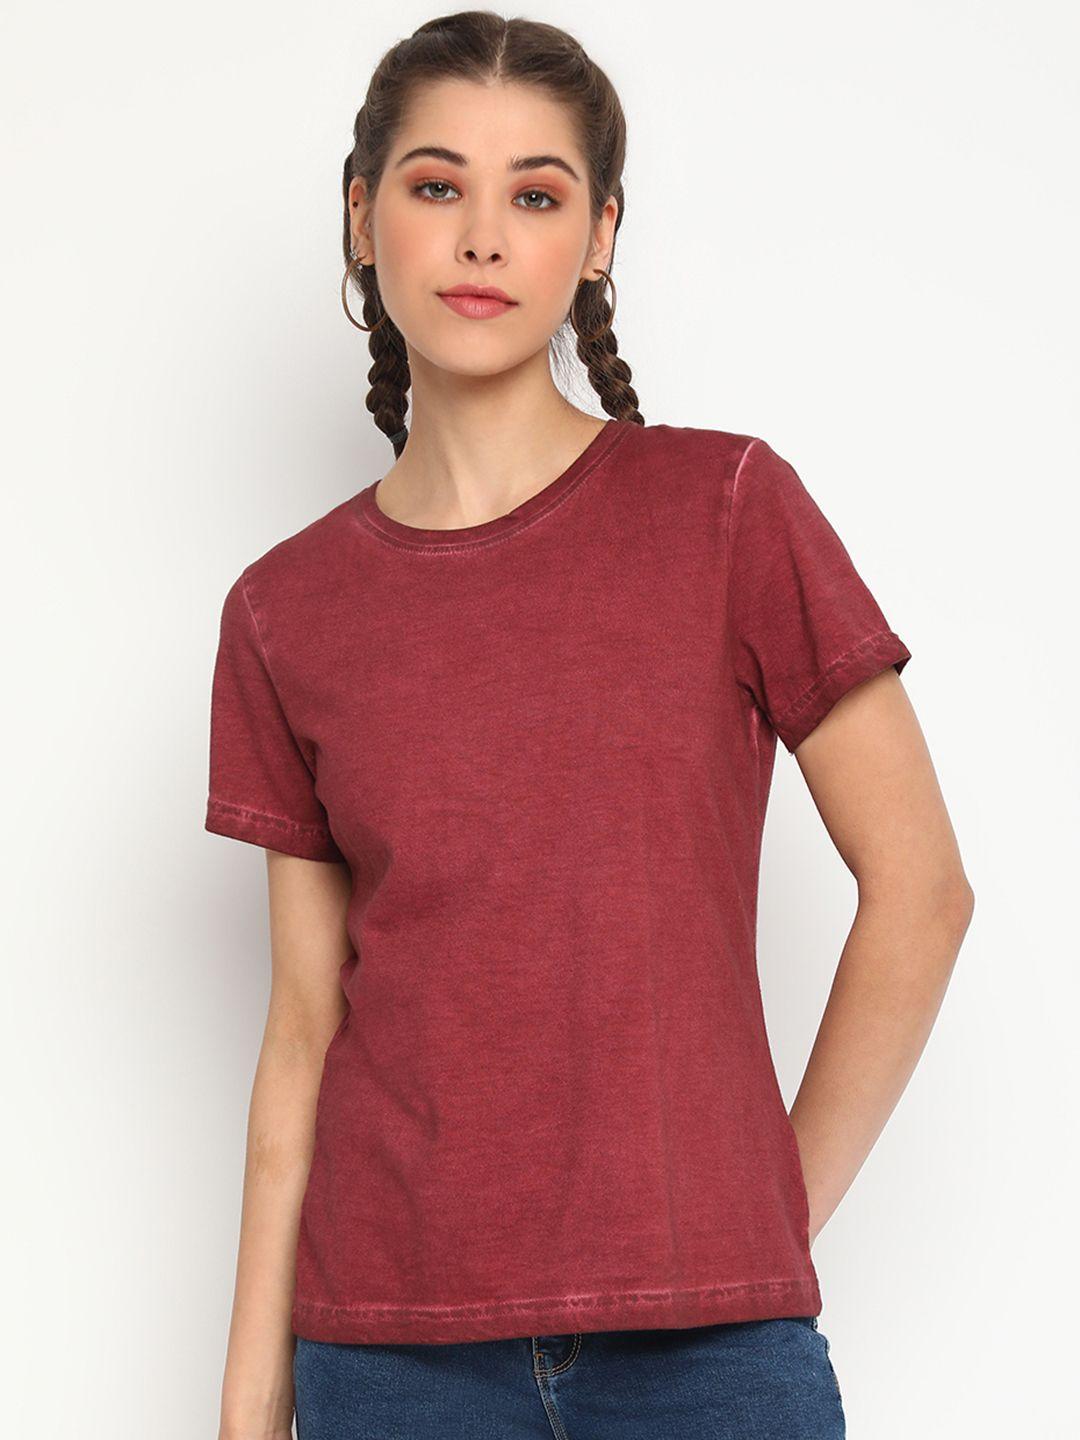 belliskey women maroon t-shirt